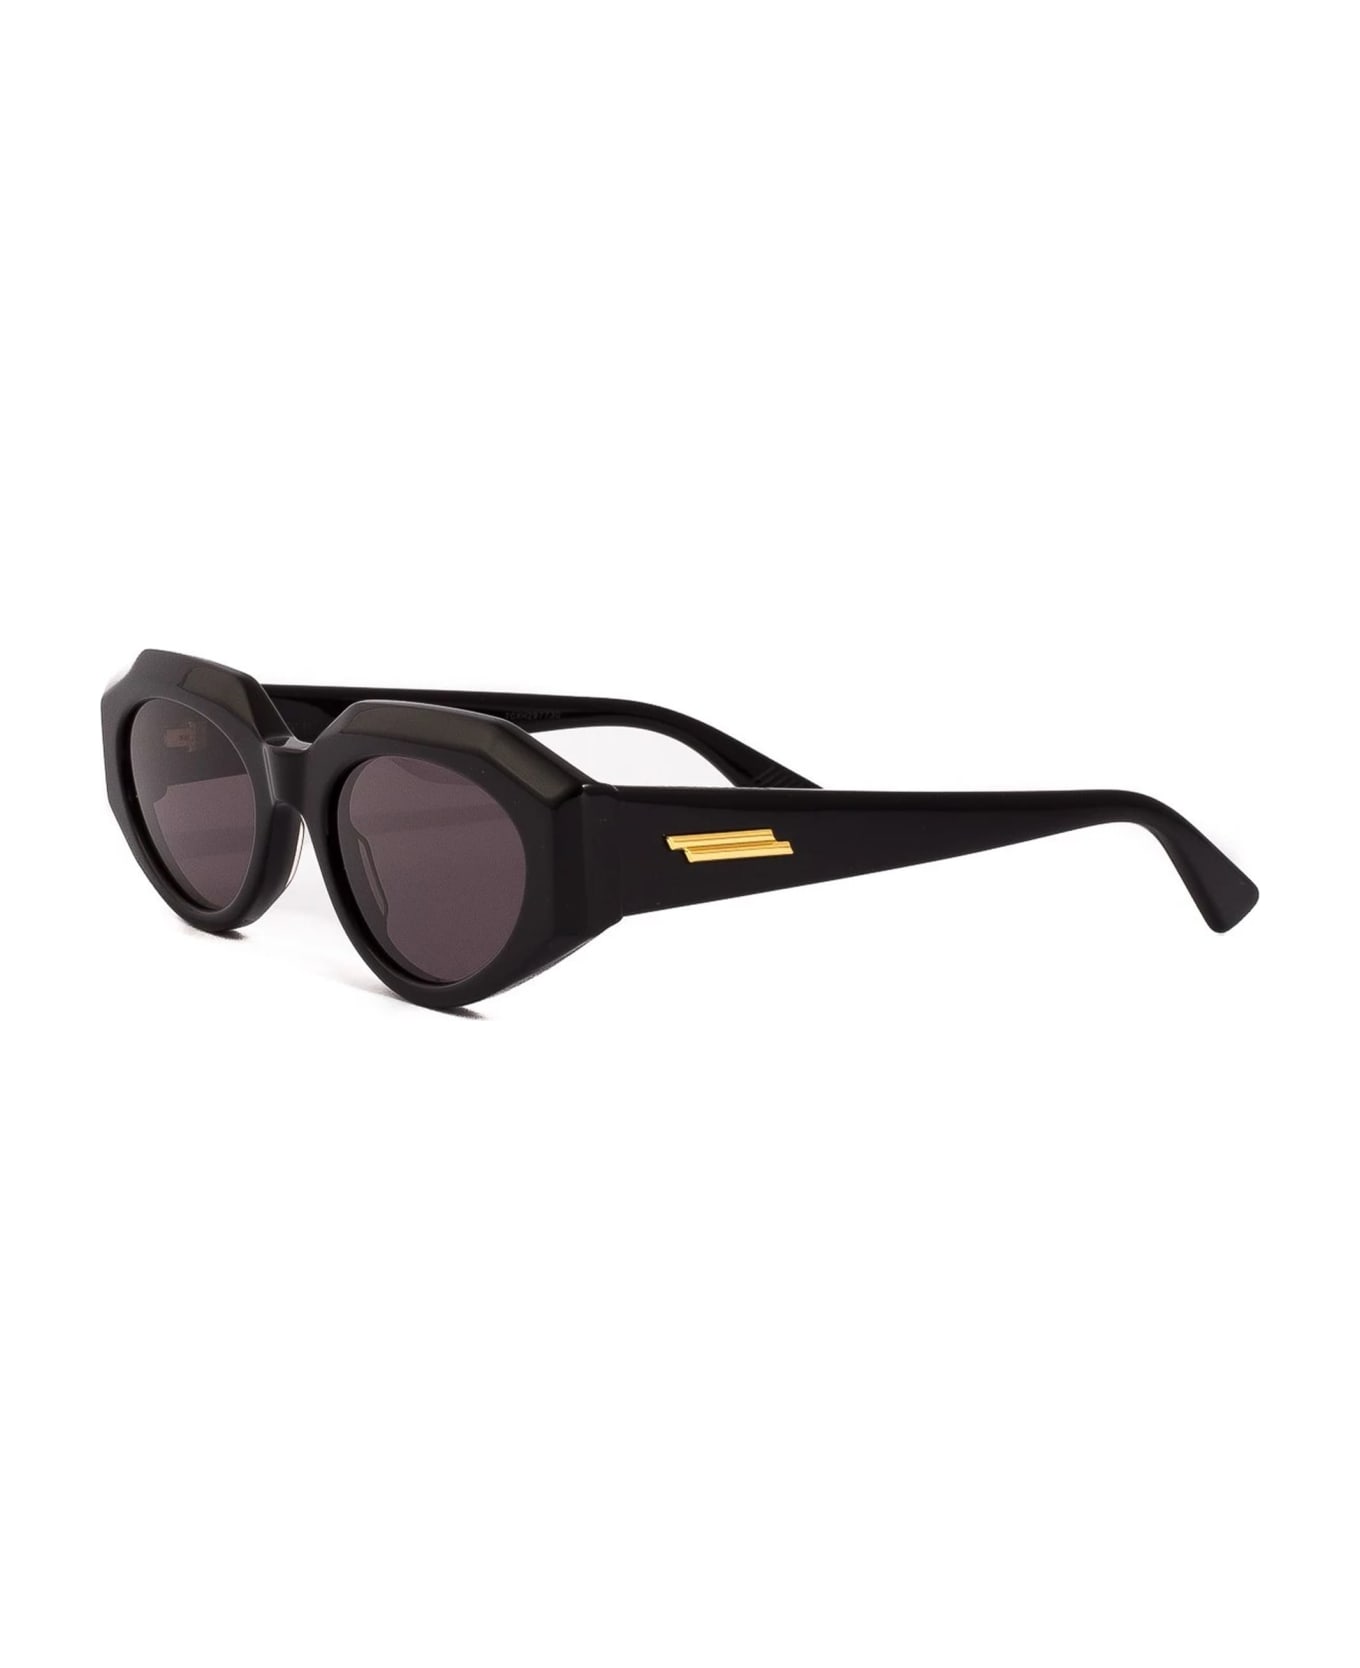 Bottega Veneta Eyewear Bv1031s-001 - Black Sunglasses - Black